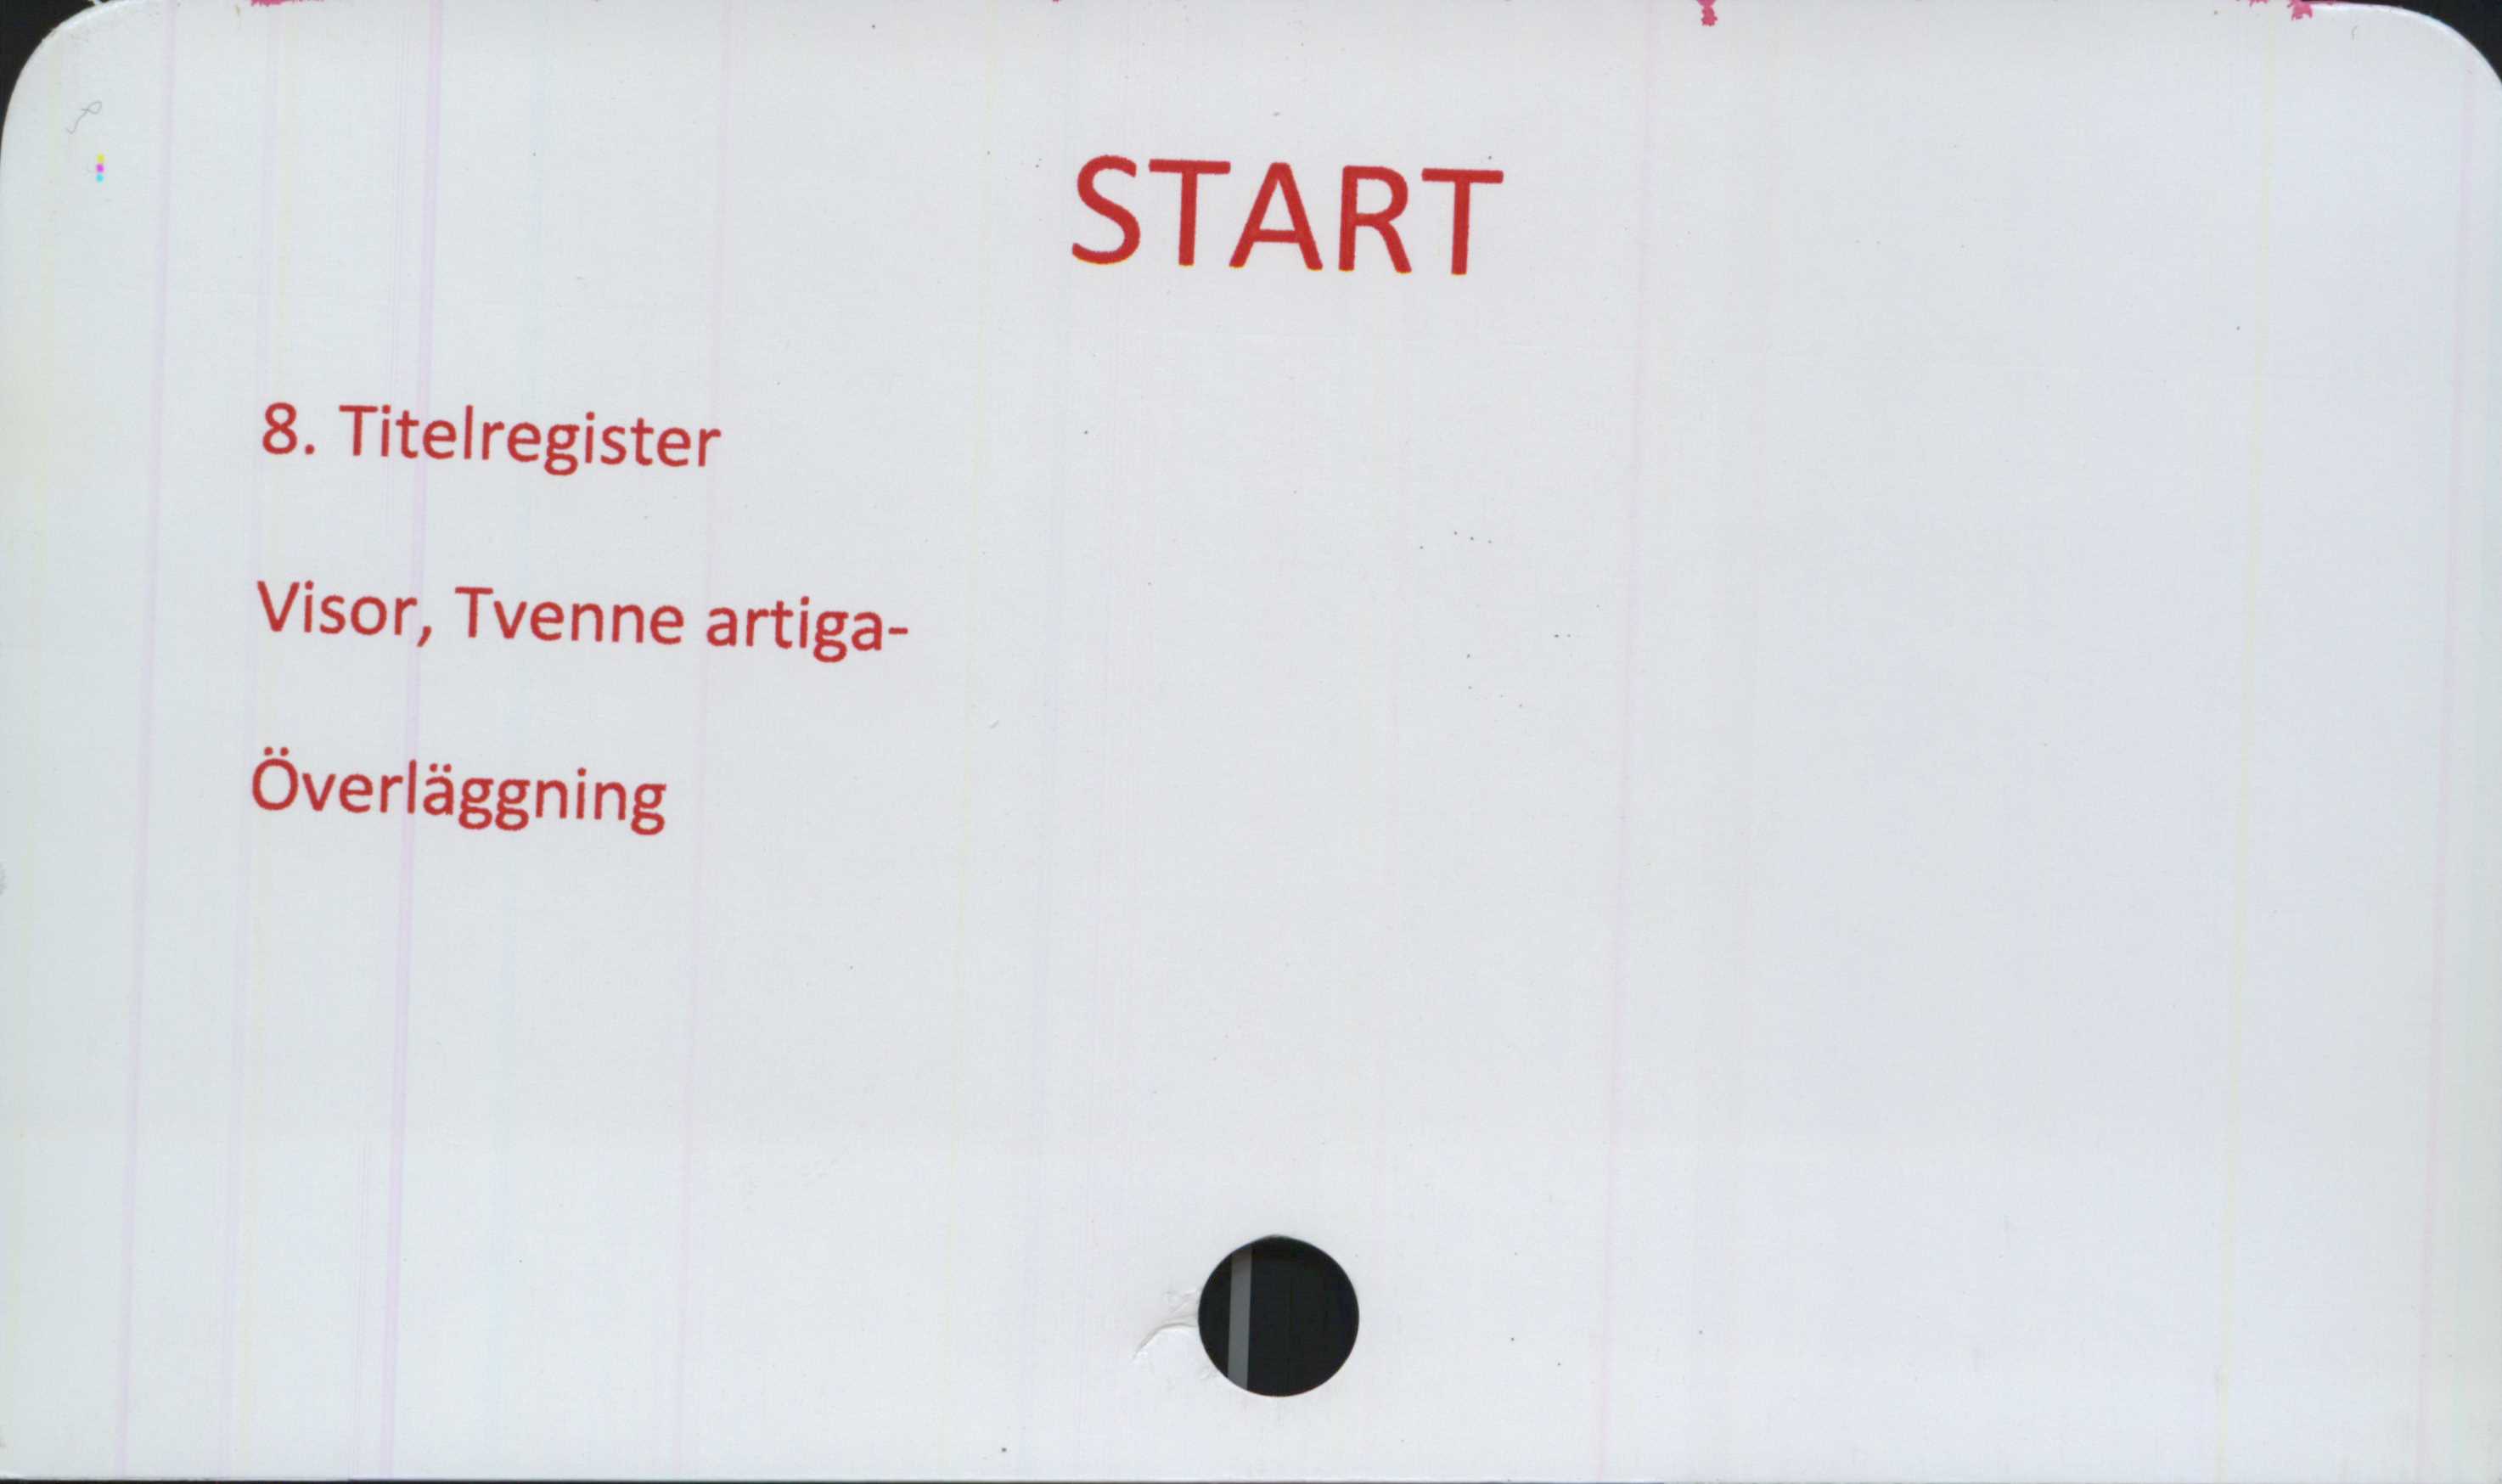 START ﻿START 

8. Titelregister
Visor, Tvenne artiga-
Överläggning